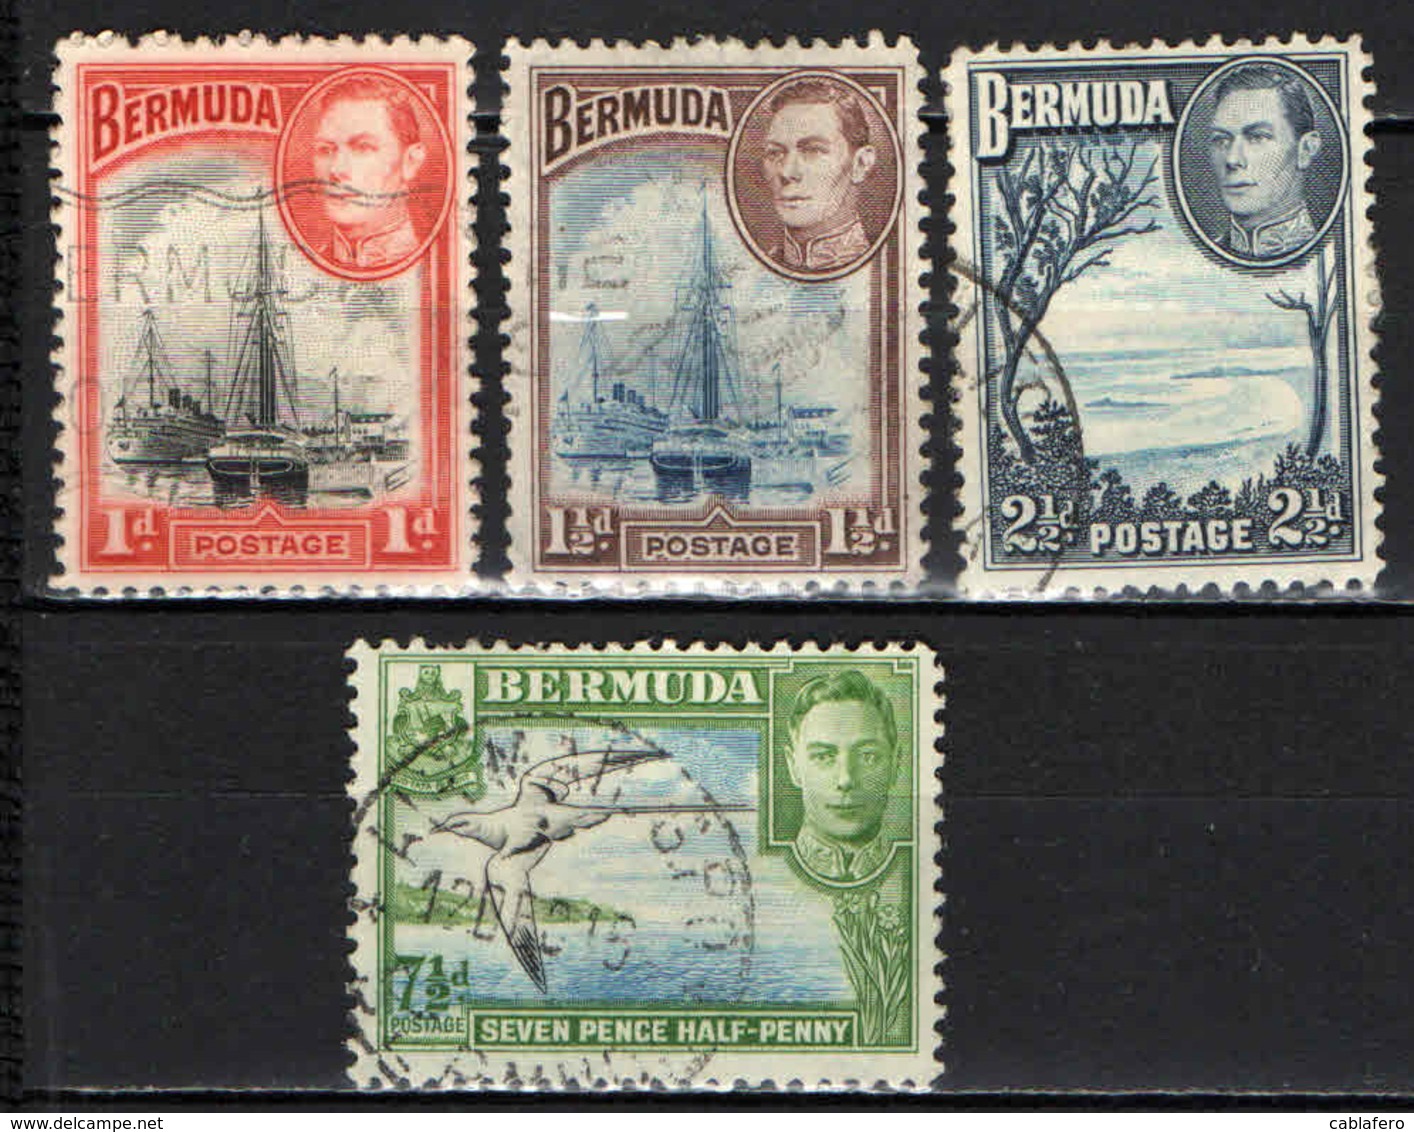 BERMUDA - 1938 - IMMAGINI DI BERMUDA ED EFFIGIE DEL RE GIORGIO VI - USATI - Bermudes